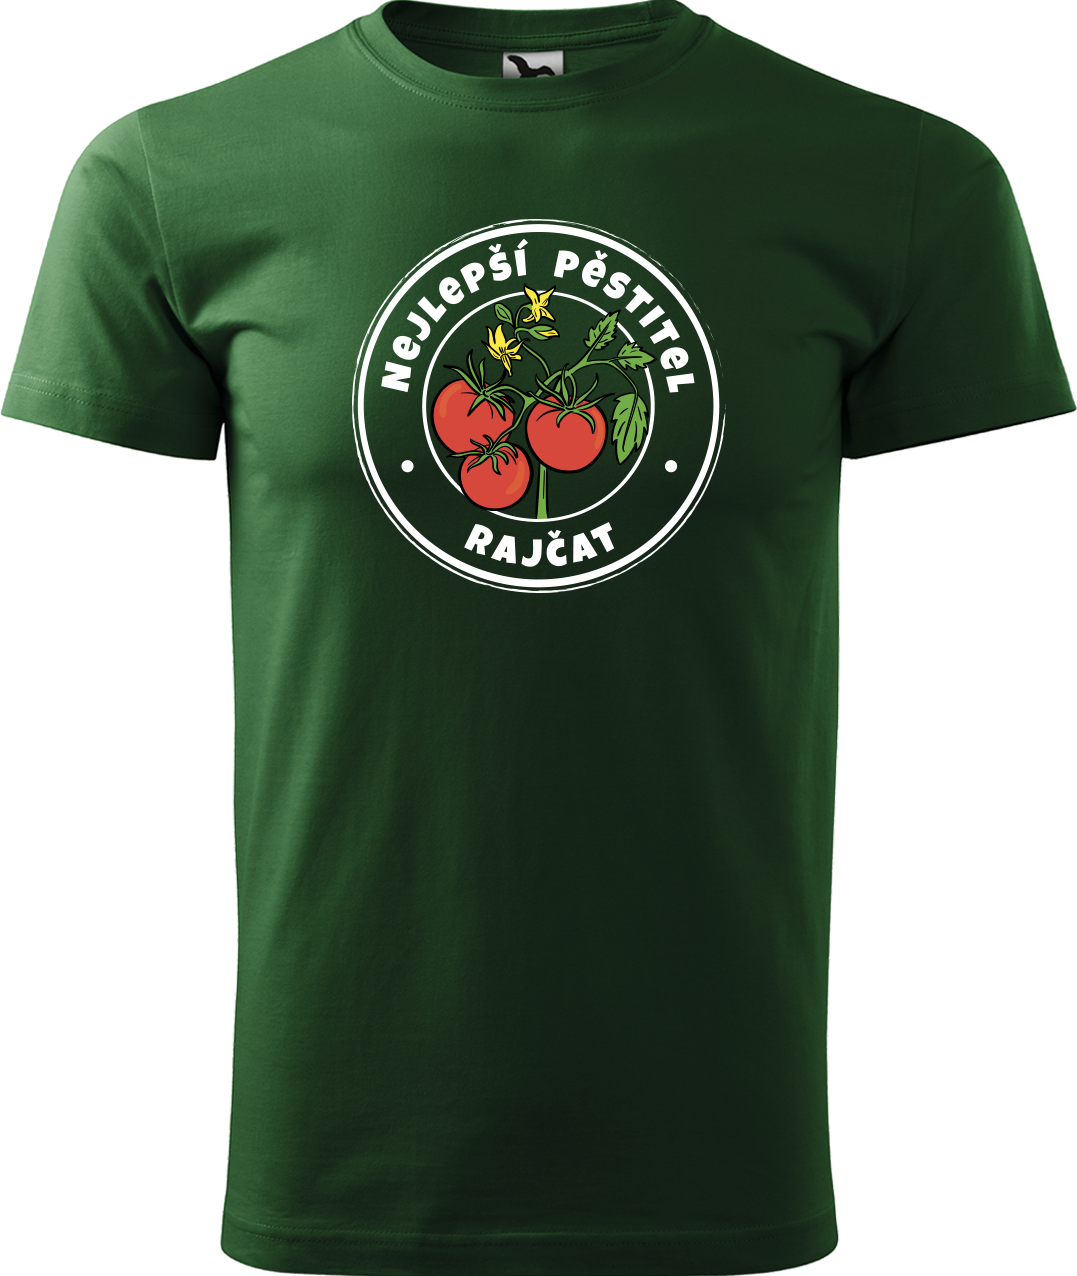 Tričko pro zahradníka - Nejlepší pěstitel rajčat Velikost: L, Barva: Lahvově zelená (06)